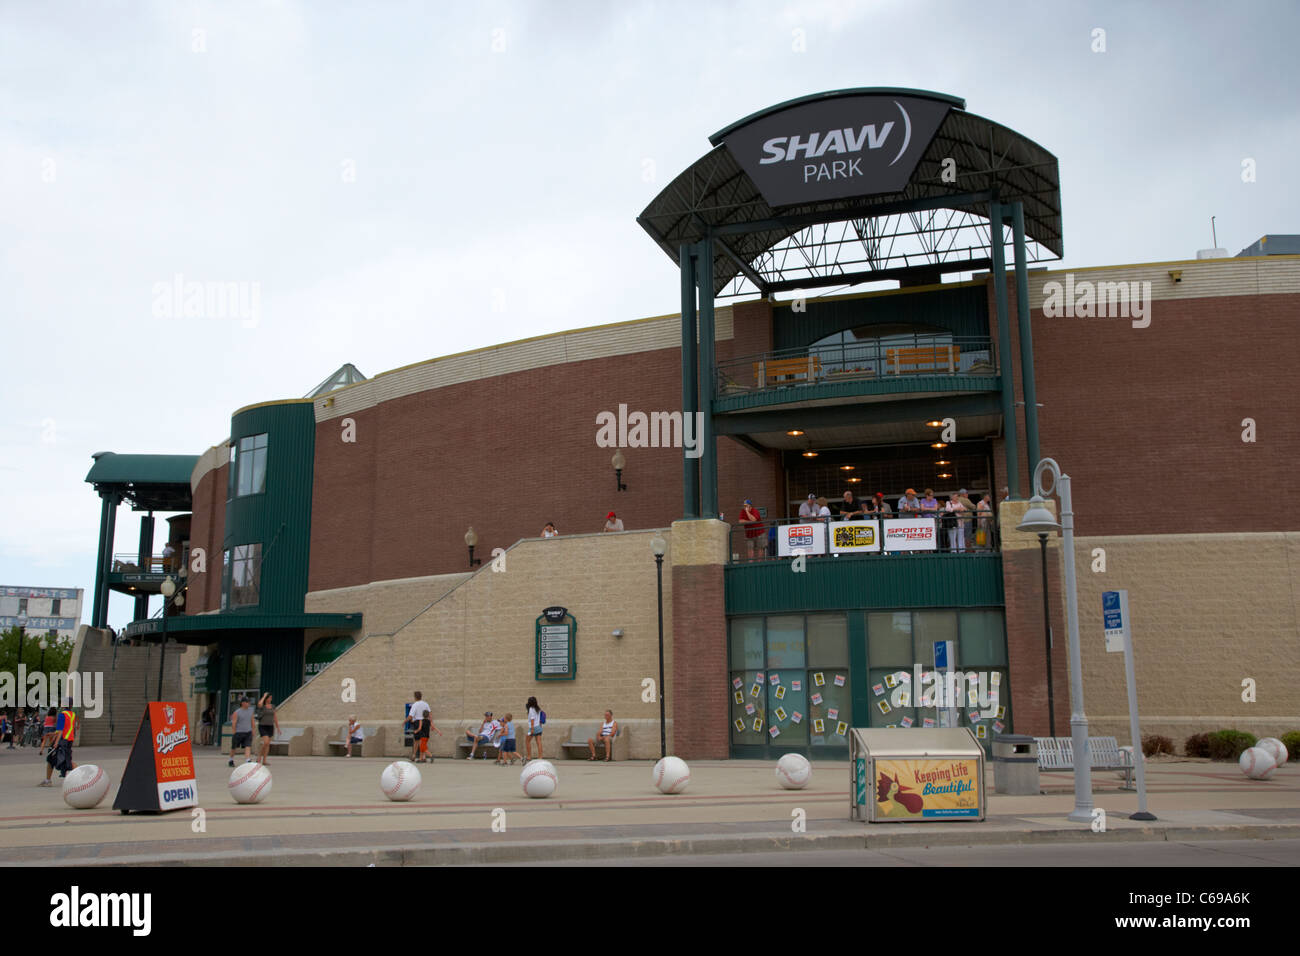 shaw park baseball stadium formerly canwest home to the winnipeg goldeyes Winnipeg Manitoba Canada Stock Photo